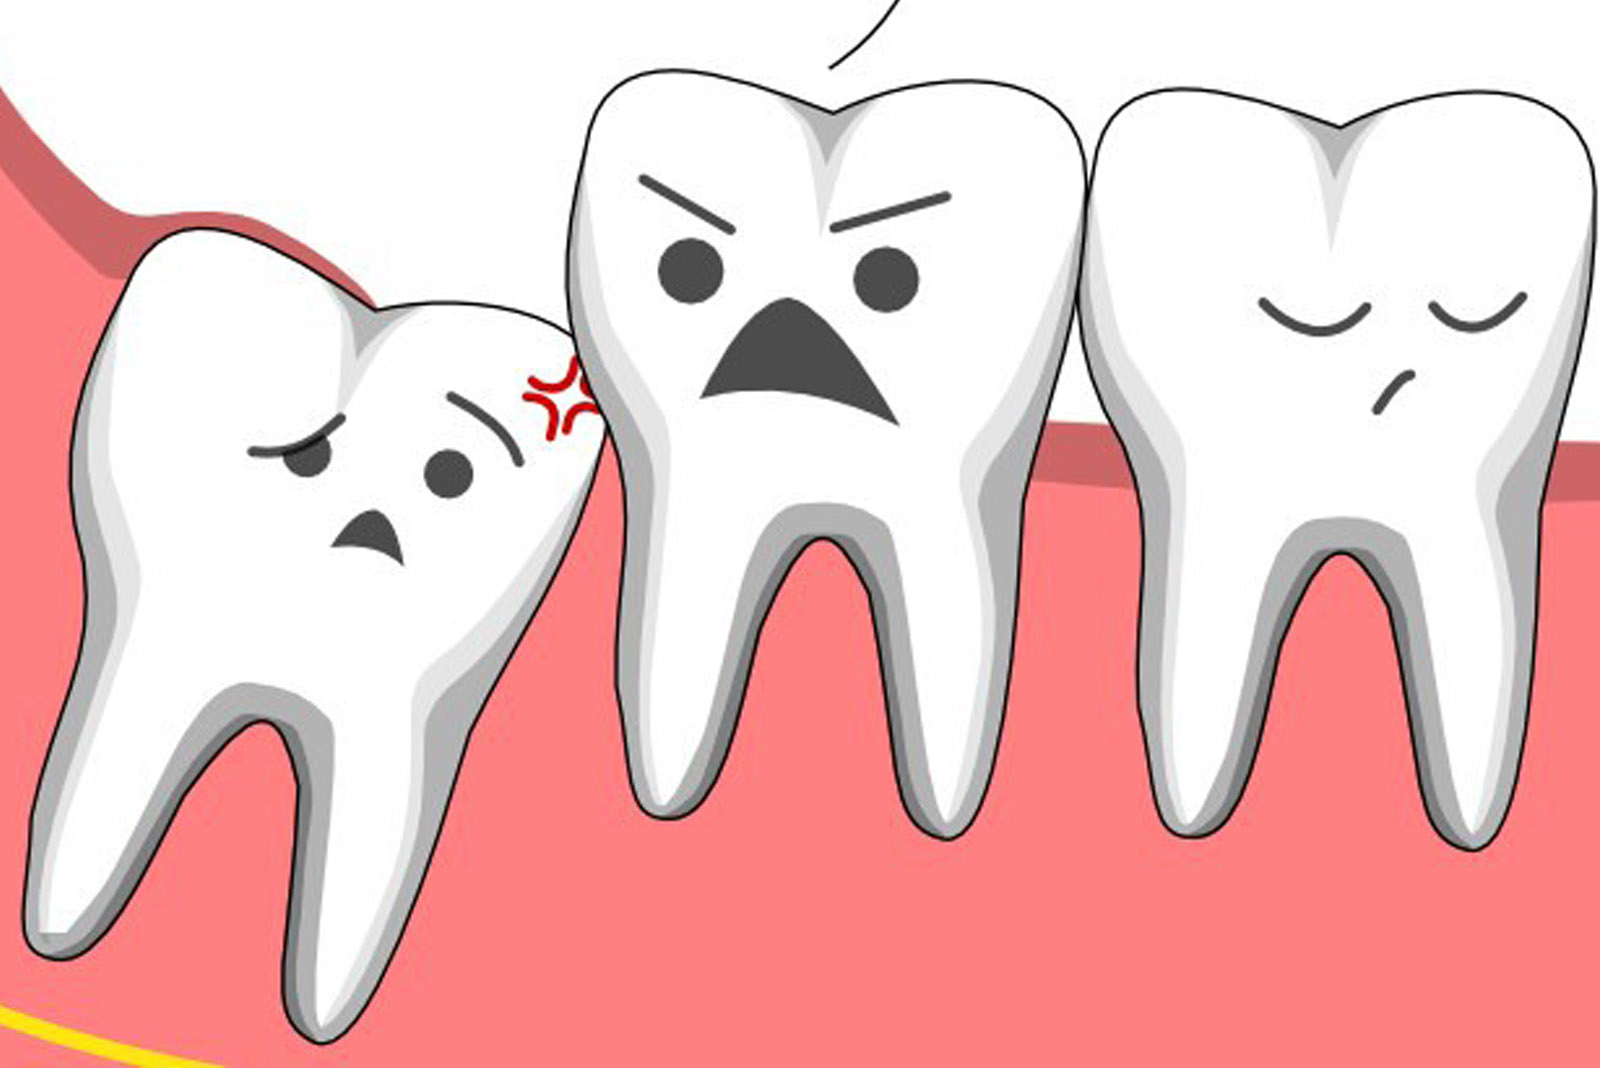 Tất tần tật mọi lưu ý khi nhổ răng khôn – Trước khi gặp bác sĩ bạn nhất định phải biết, tránh hiểm hoạ khôn lường - Ảnh 2.